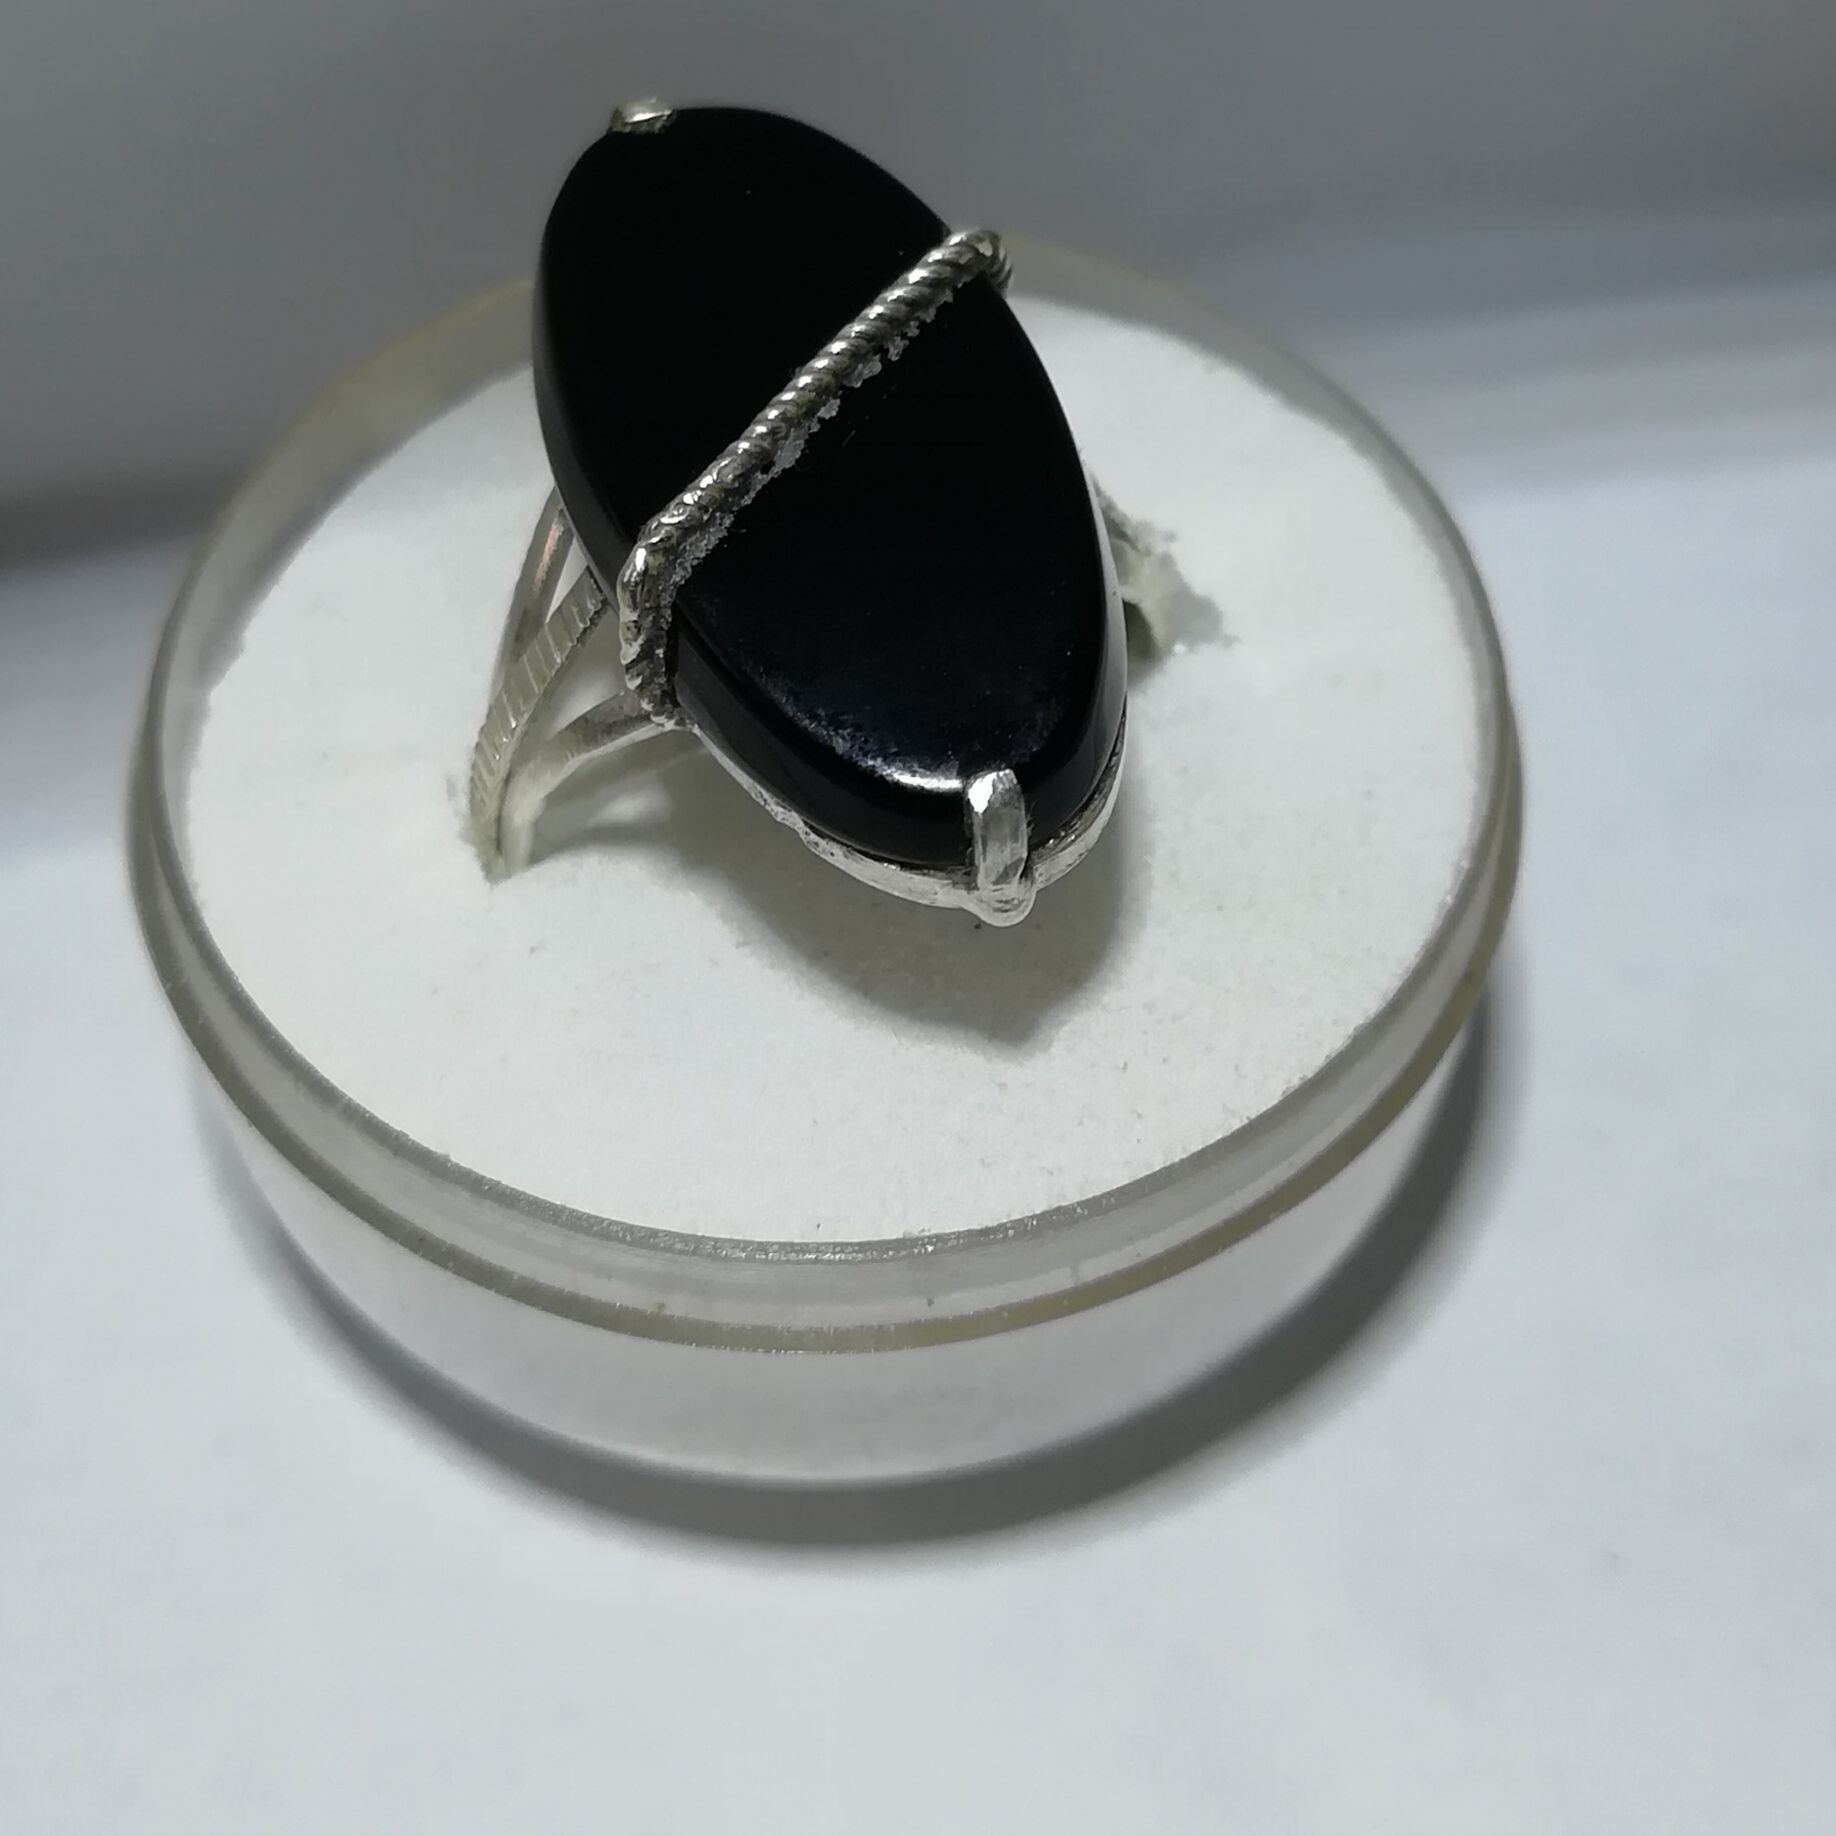 Buy Pearl Silver Rings for ladies | Silver Moti Rings